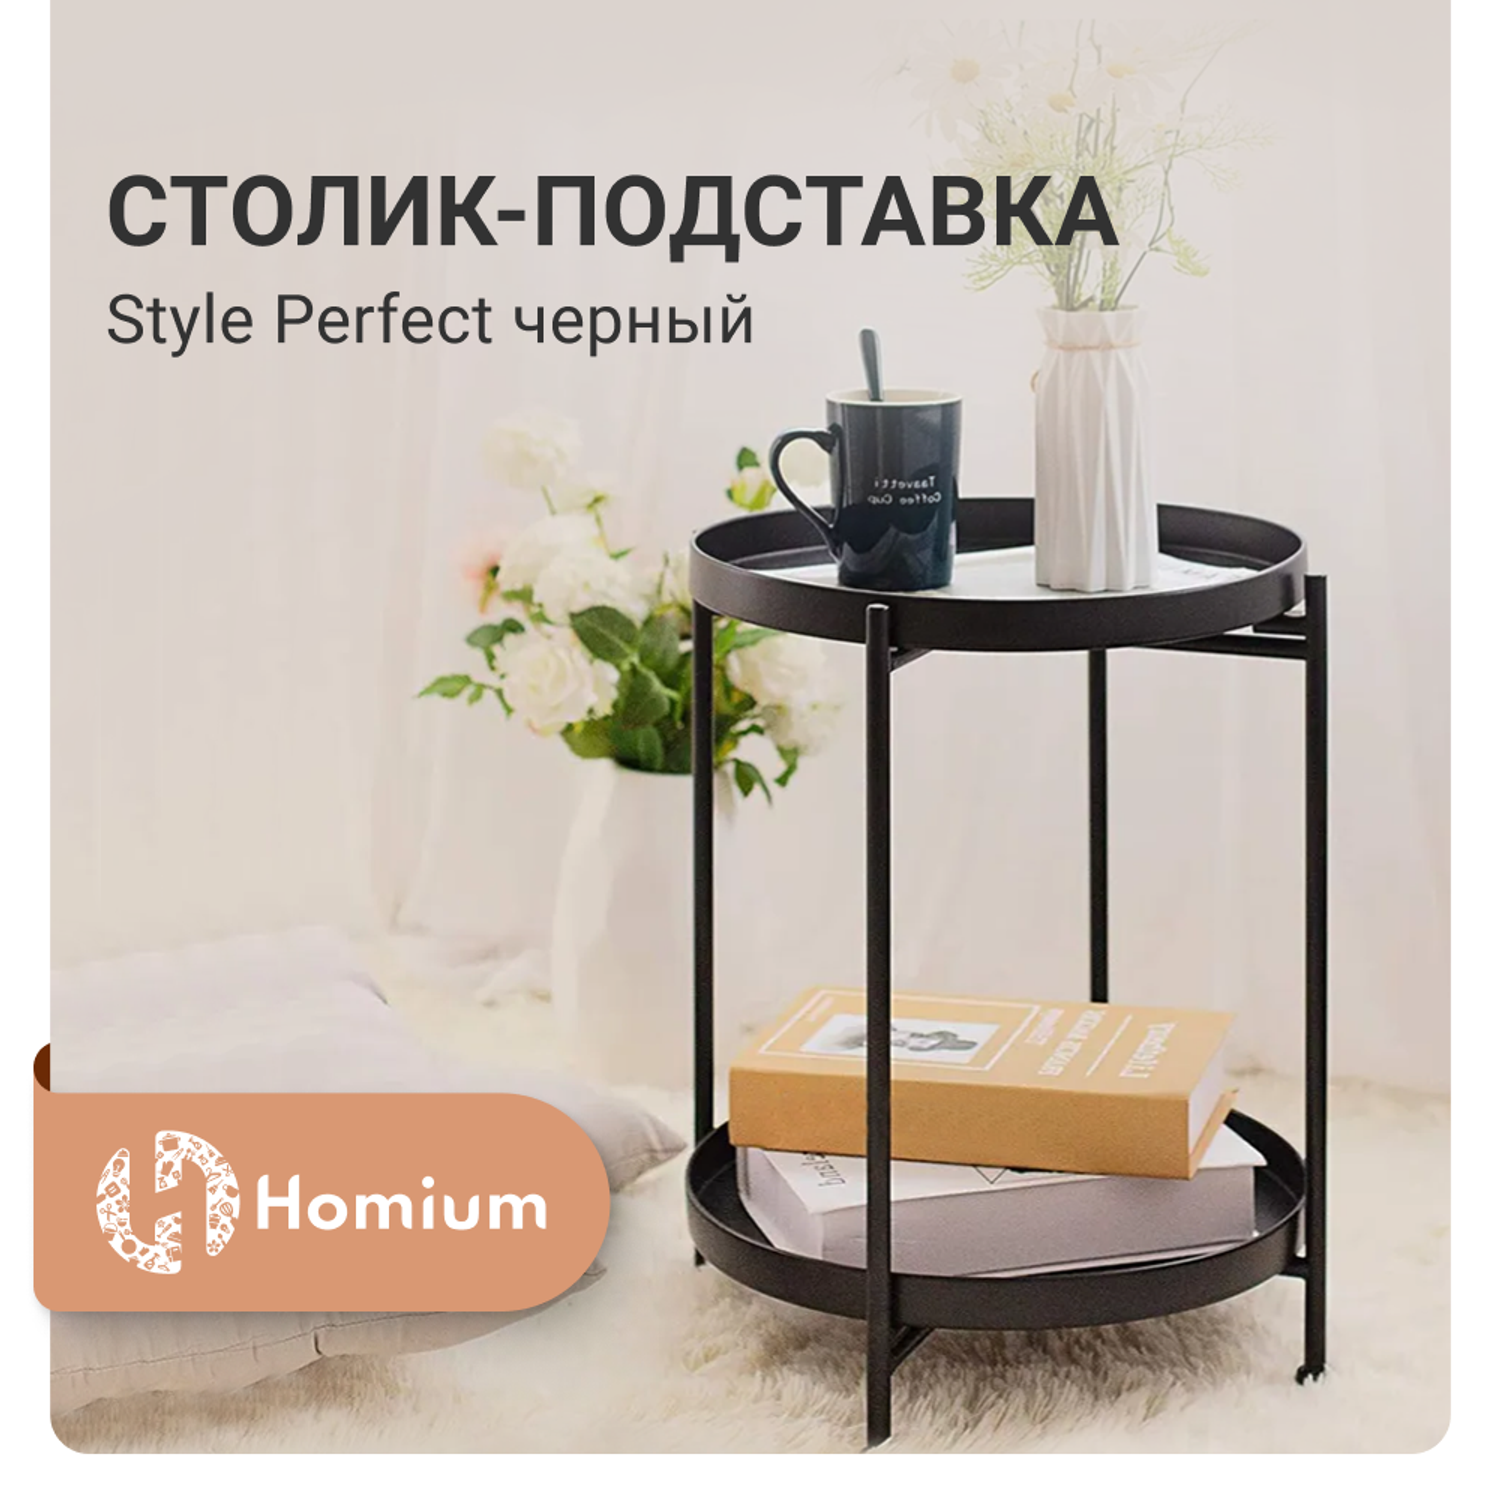 Подставка ZDK Homium Style Perfect 2 уровня цвет черный - фото 2